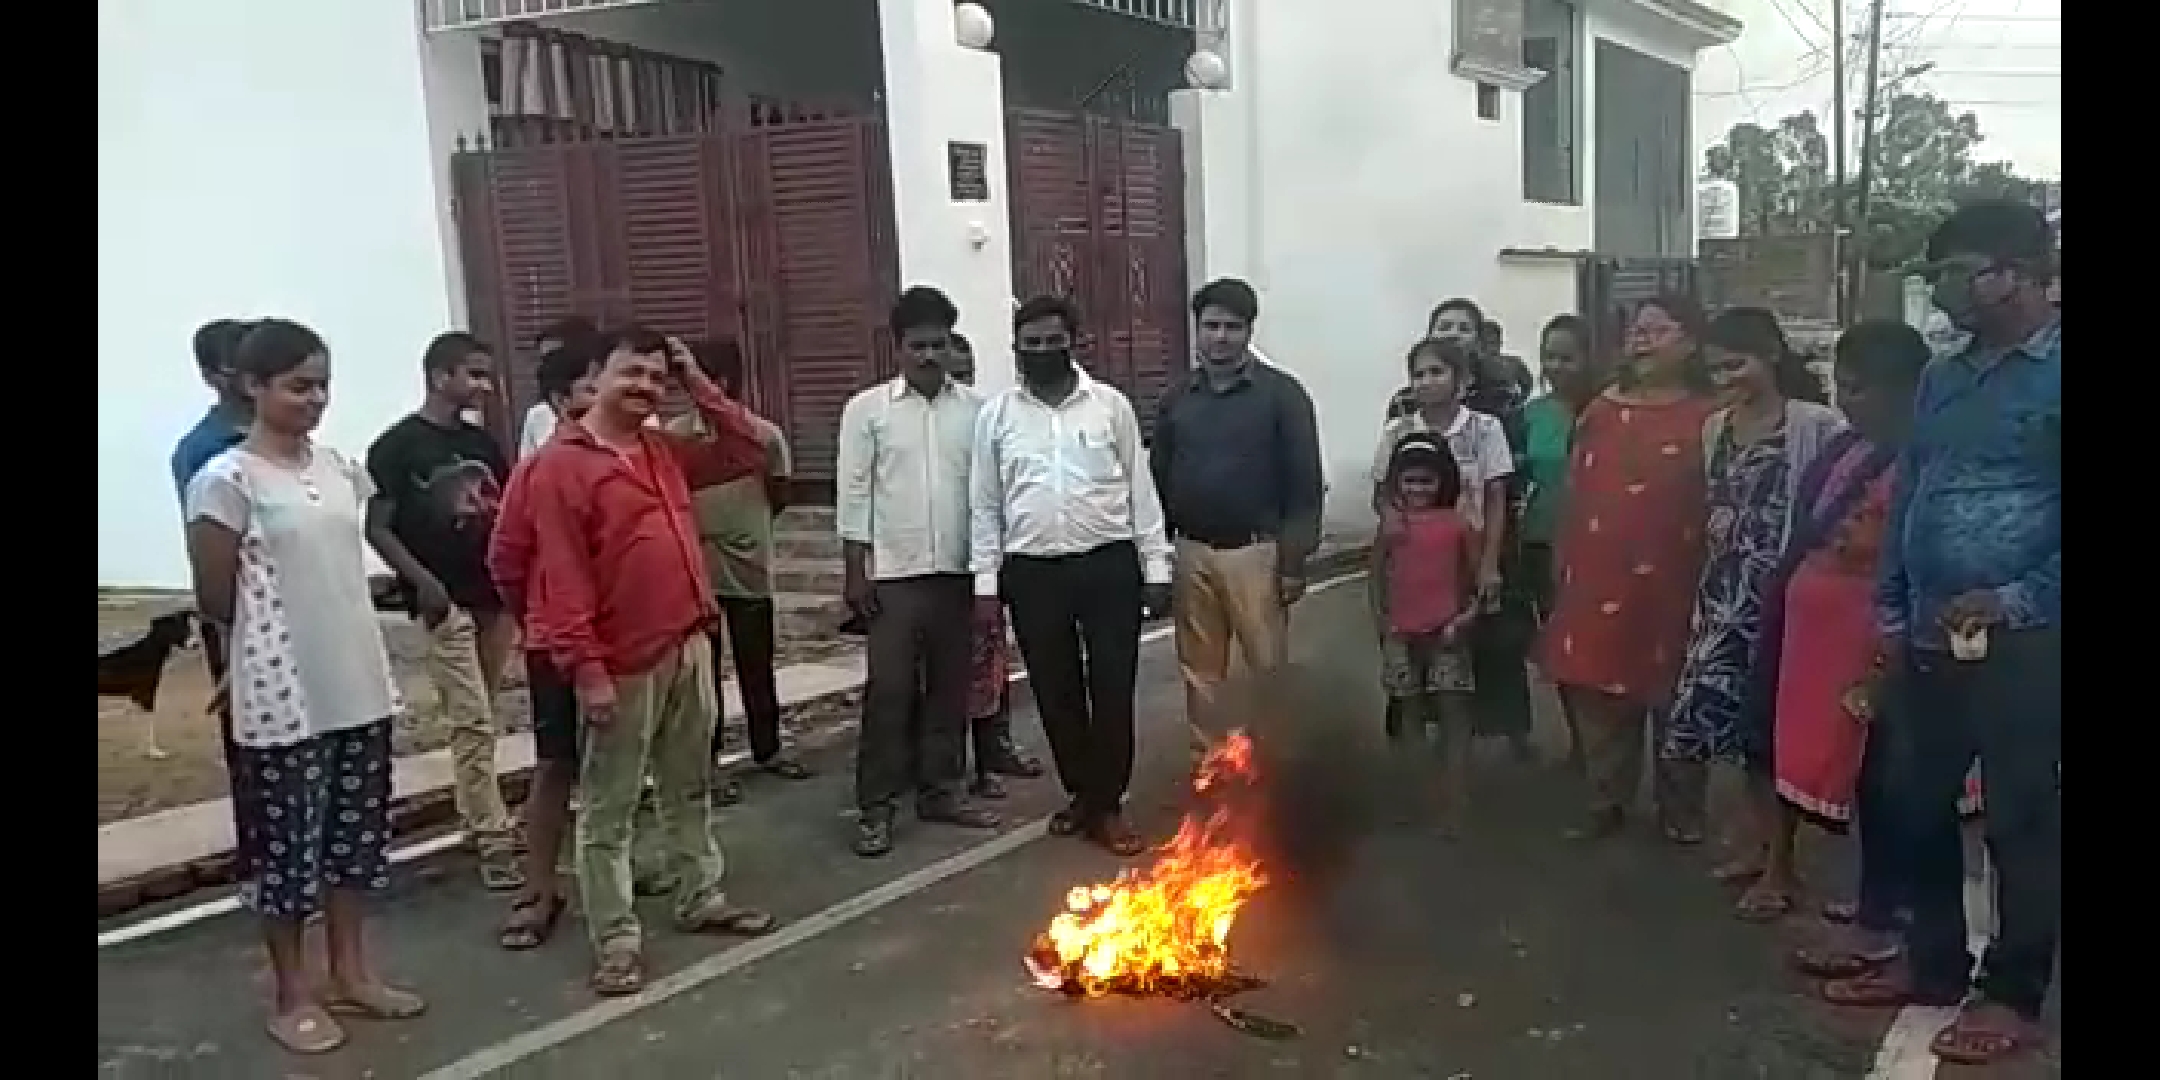 रायबरेली में बच्चों ने अपने खिलौनों को जलाकर चीनी सामानों का किया विरोध